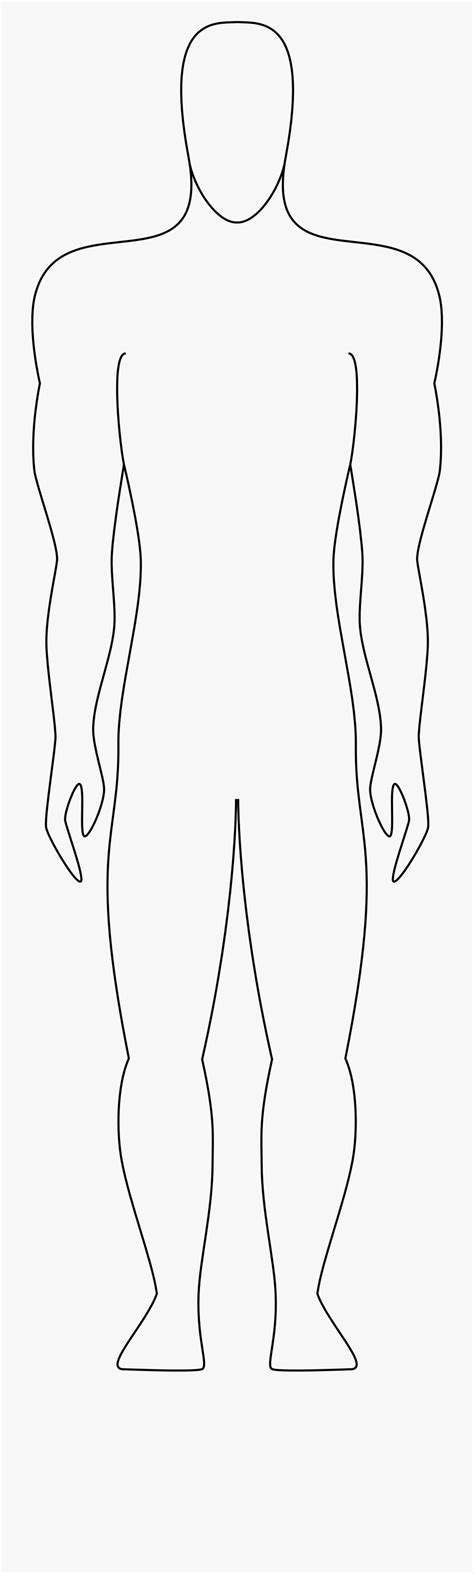 printable outline  human body